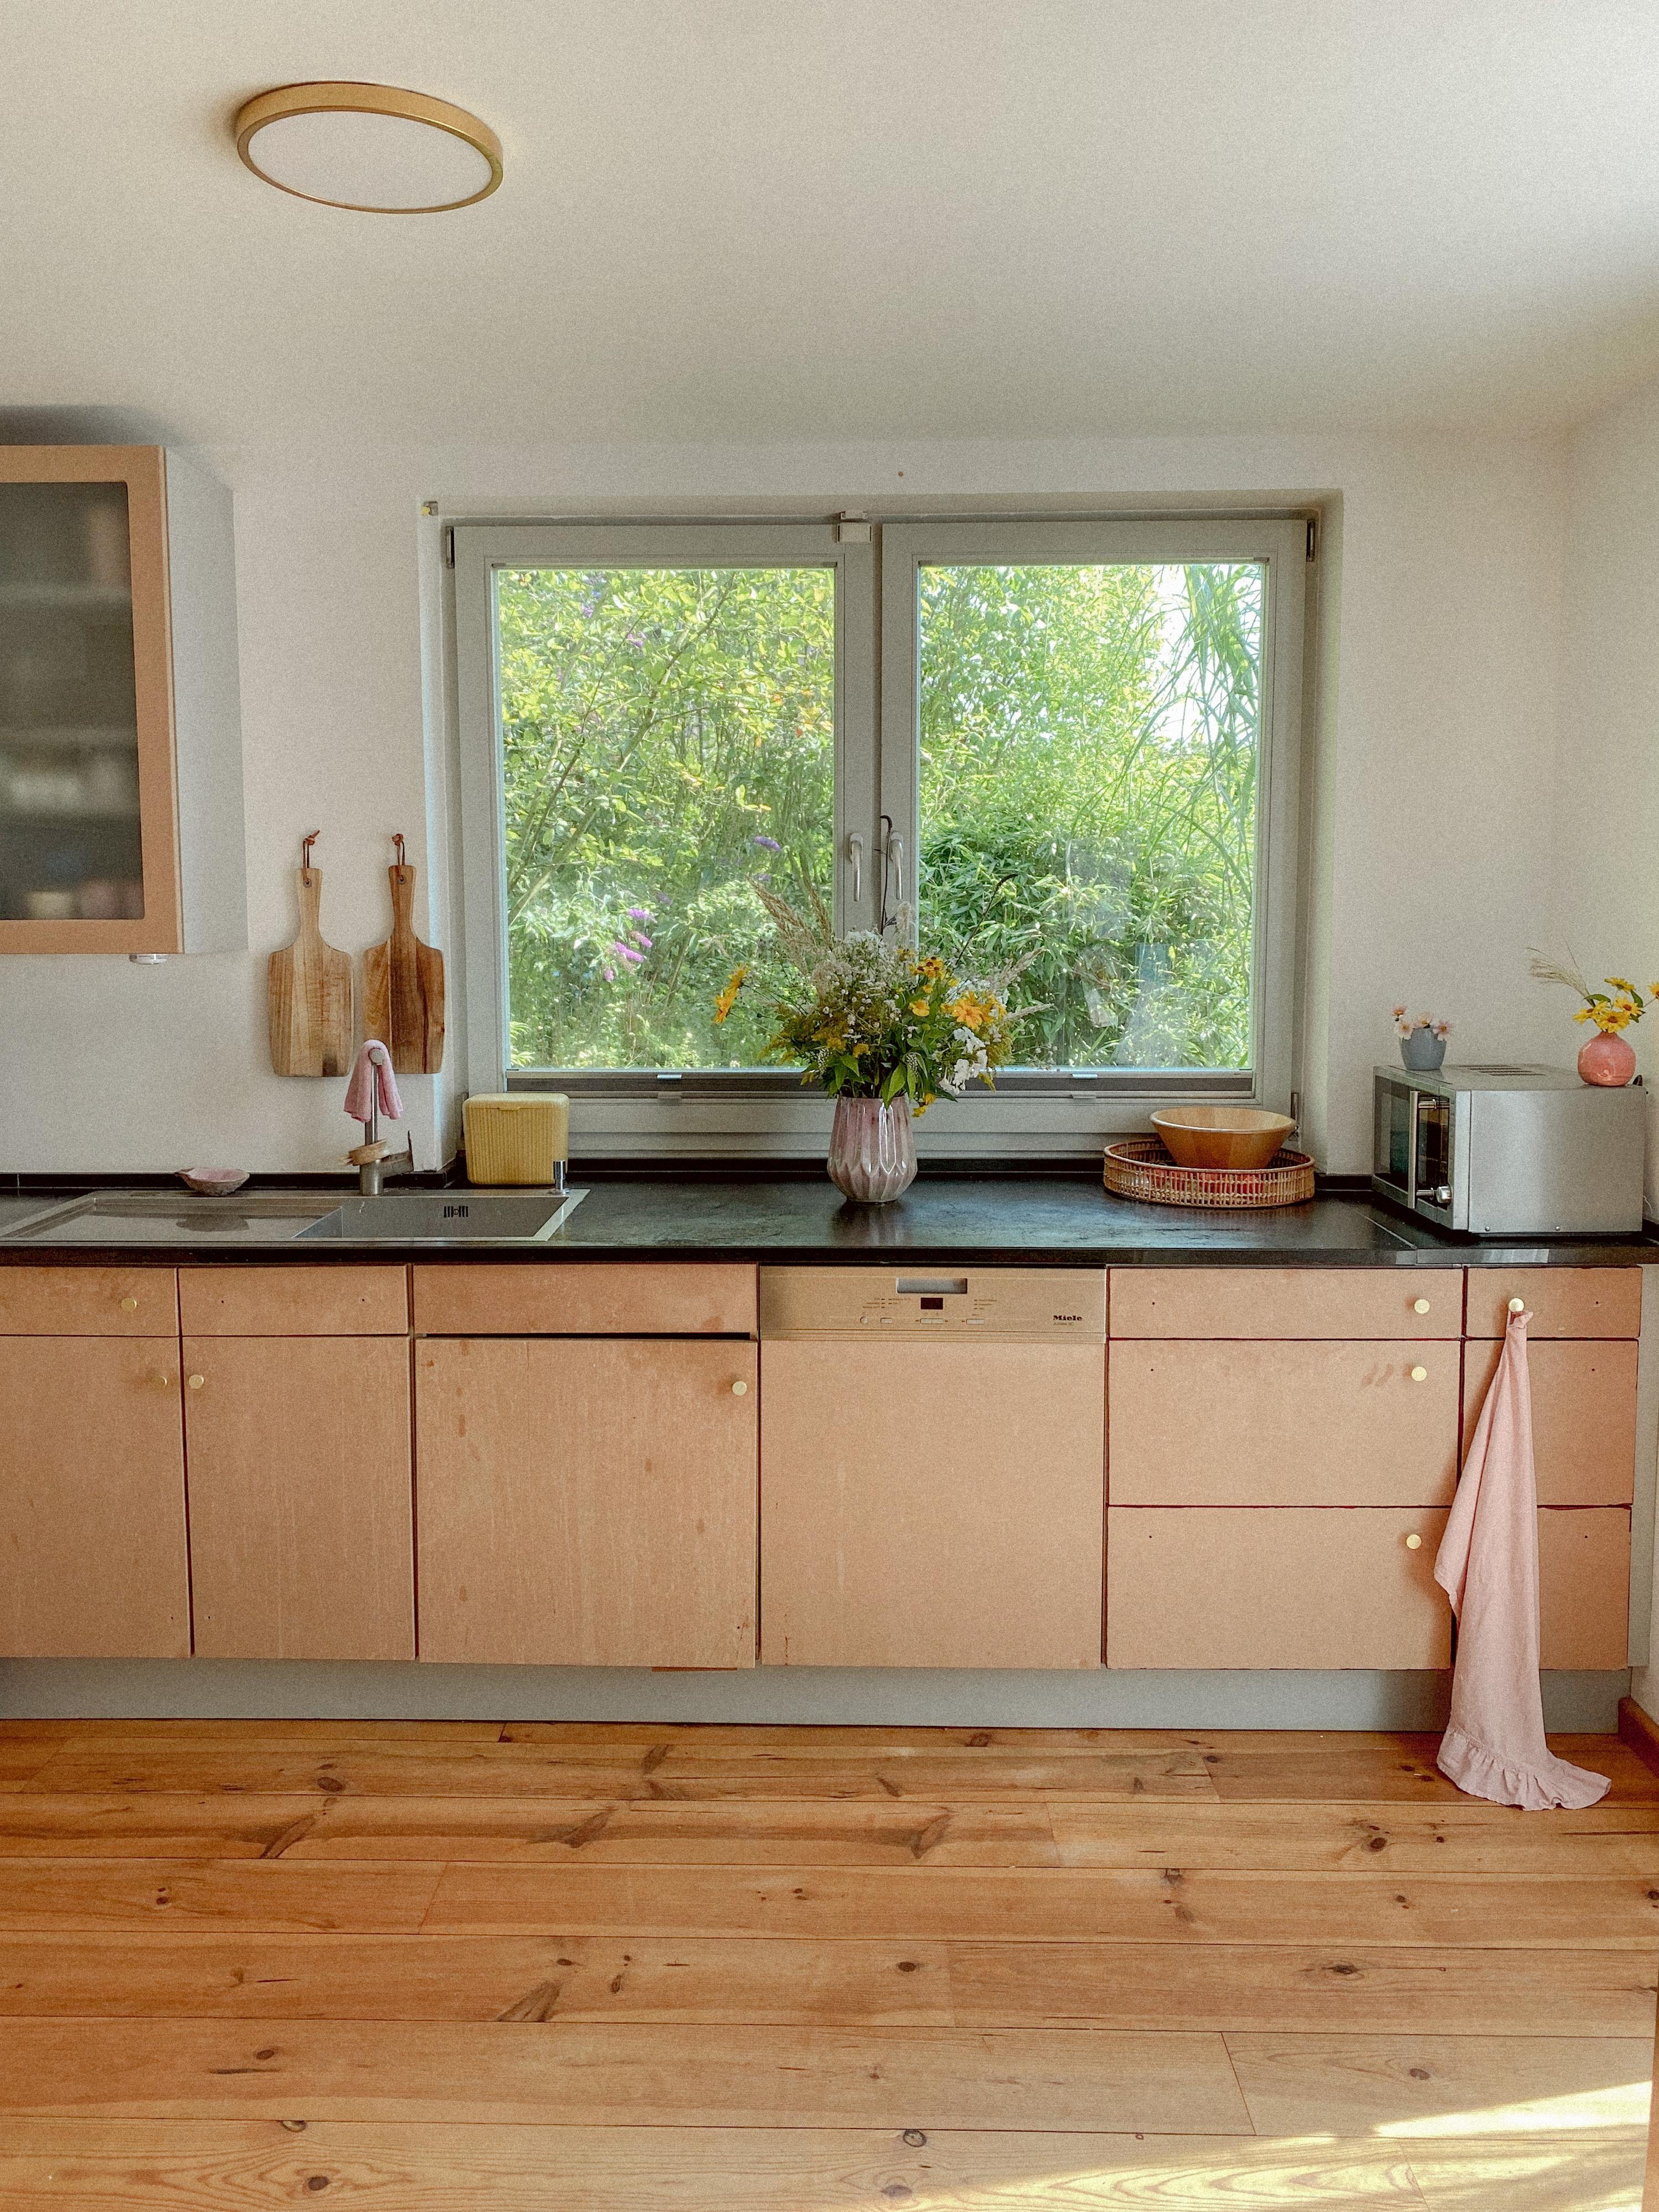 Bald kommen Holzbretter und Fliesenspiegel statt Hochschrank. #couchstyle #messinggriffe #küche #granitplatte